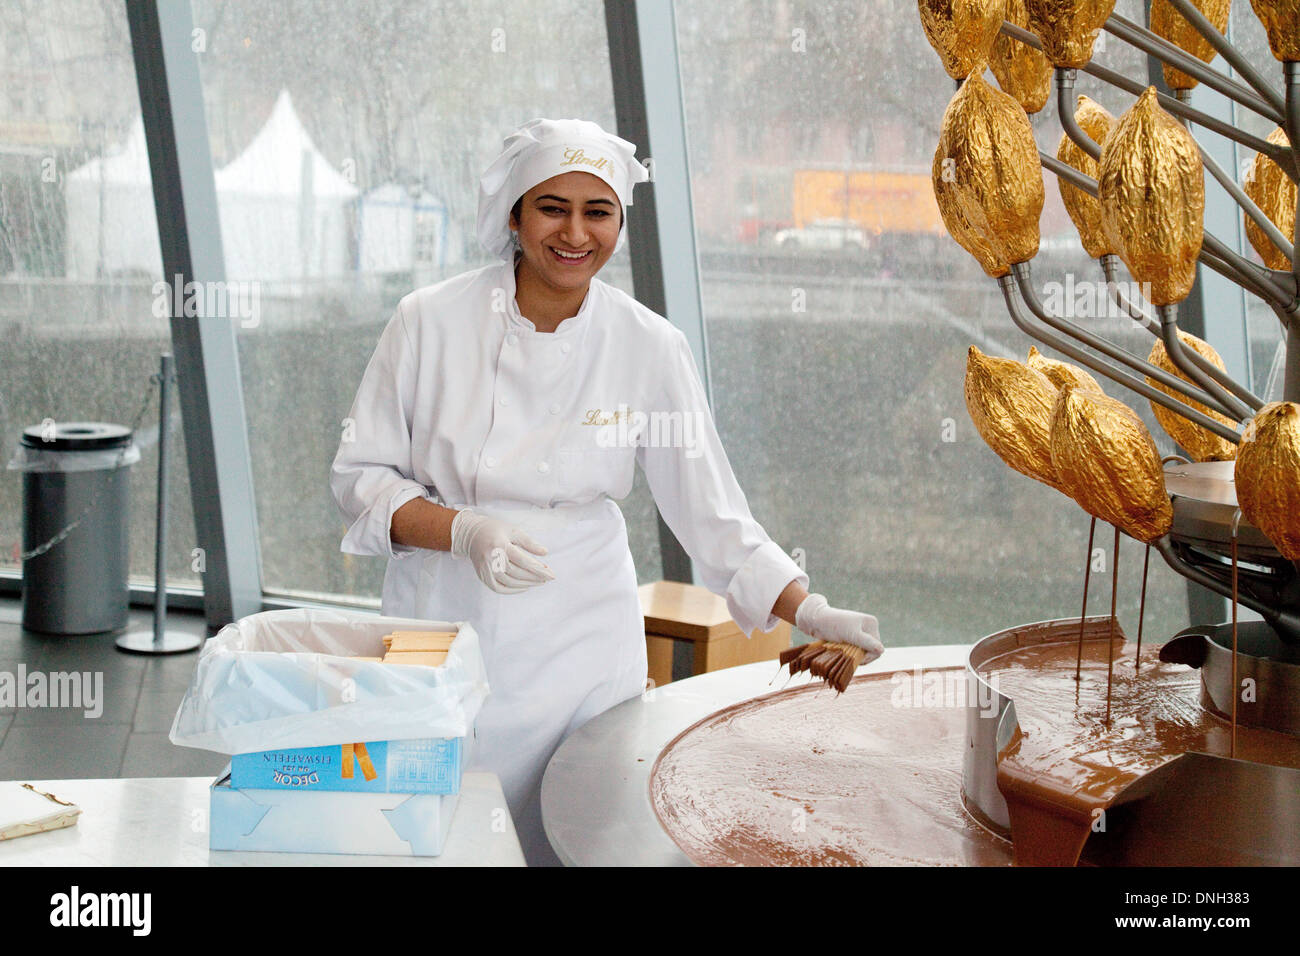 Ein Mitarbeiter der Lindt Schokolade, Lindt Museum of Chocolate, Köln (Köln), Deutschland, Europa Stockfoto